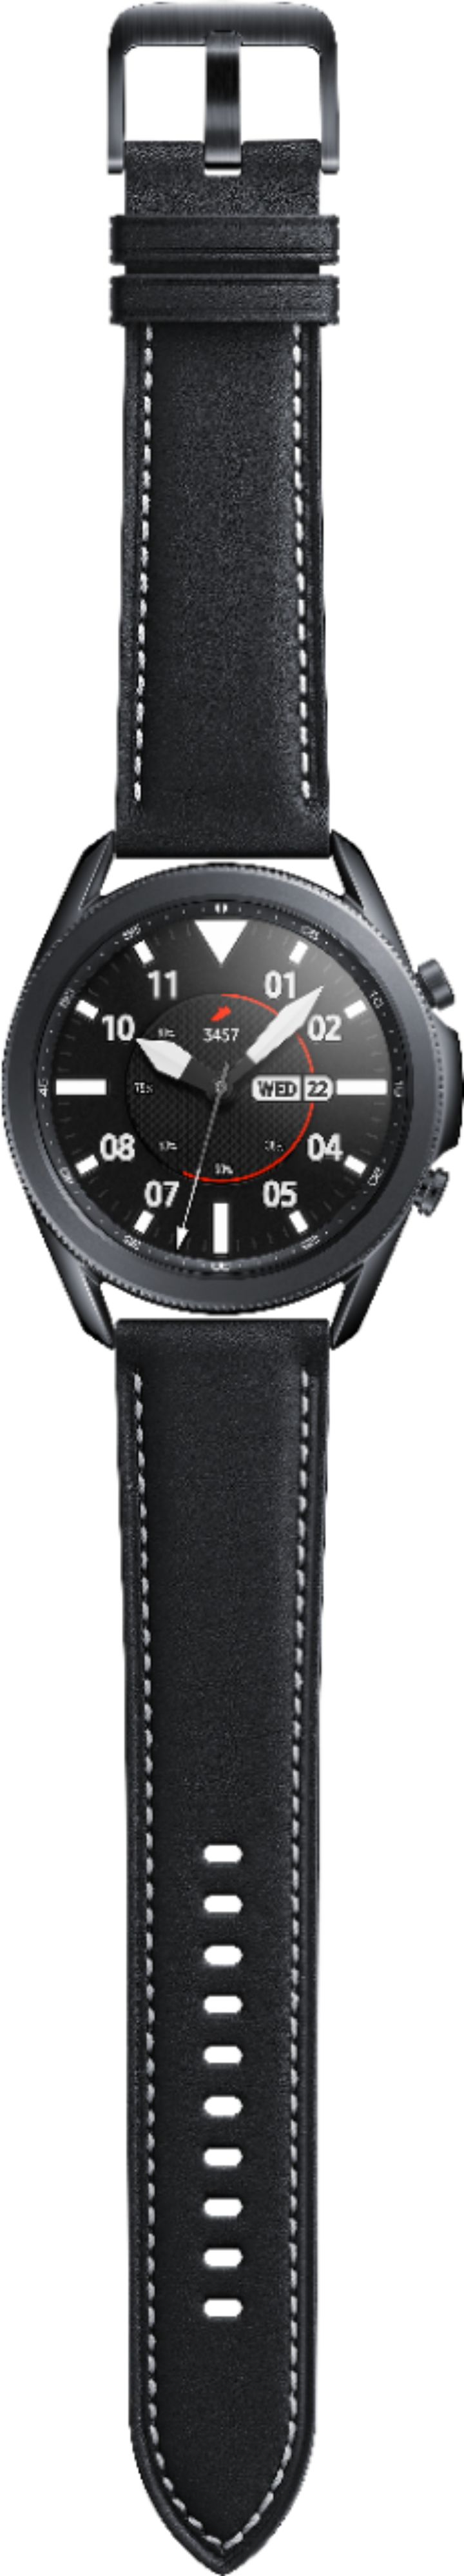 Best Buy: Samsung Galaxy Watch3 Smartwatch 45mm Stainless BT